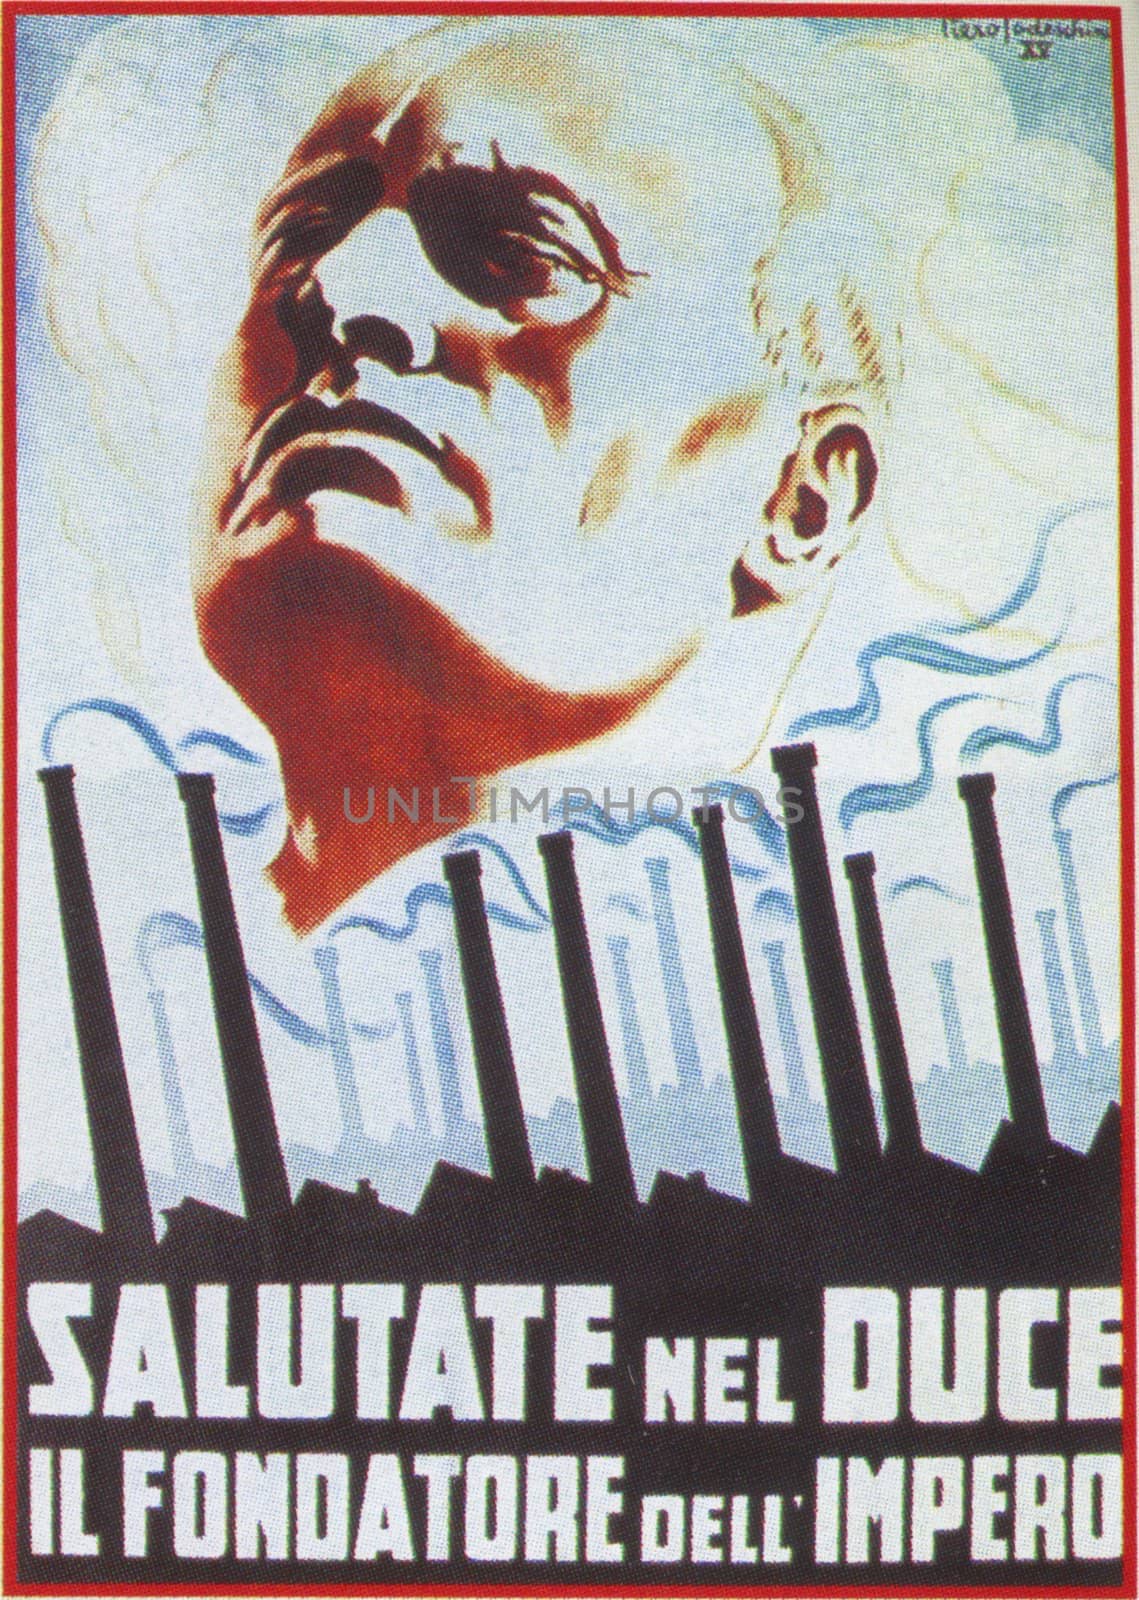 ITALY, circa 1943: Benito Mussolini shown on a propaganda Nazi poster, circa 1943